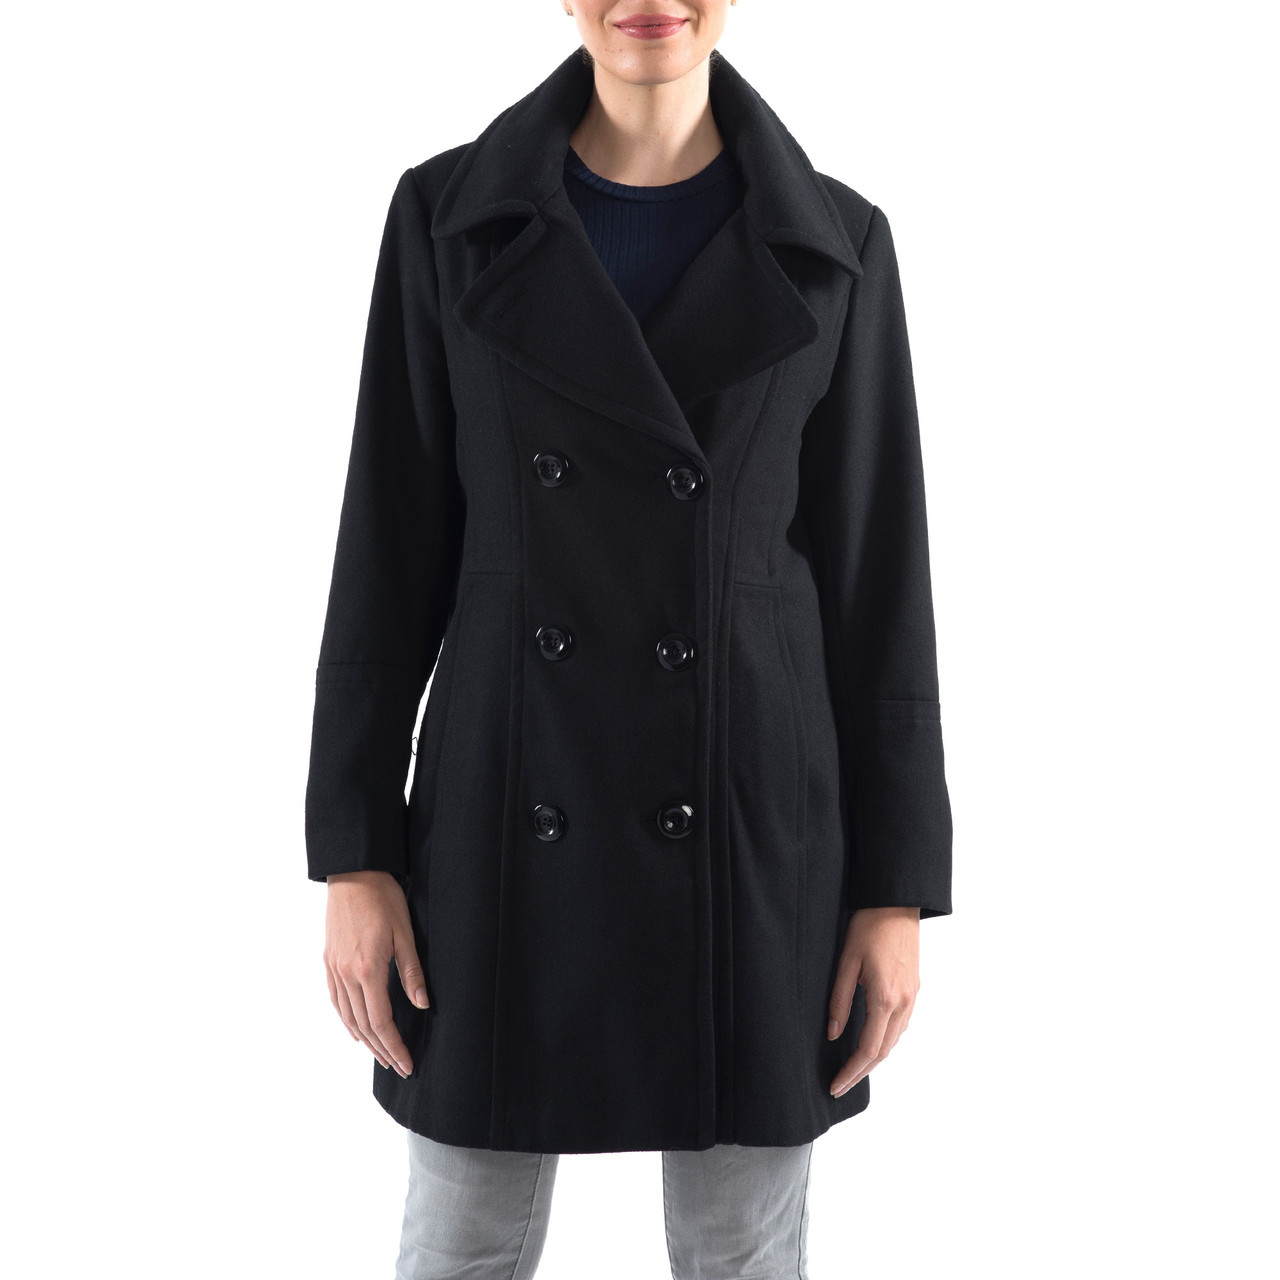  Women's Coat Jacket Double Breasted Overcoat Coat